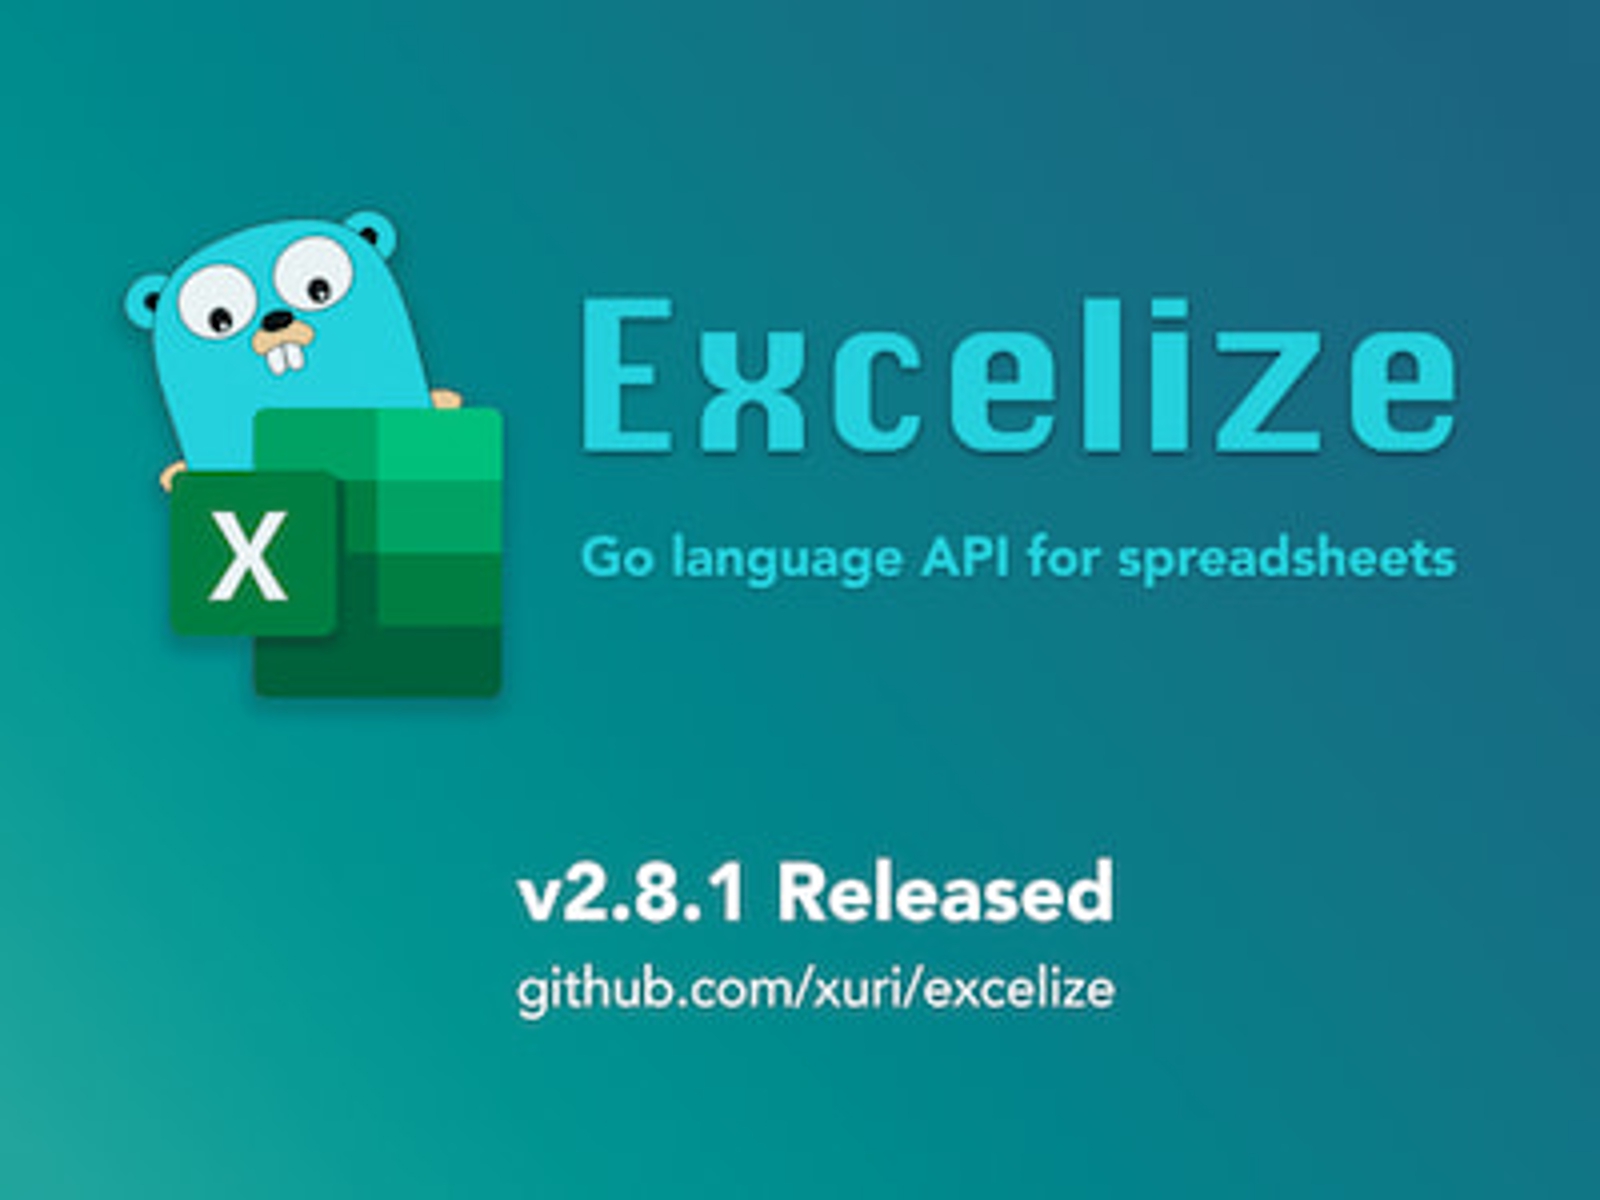 Go 言語スプレッドシートライブラリ：Excelize 2.8.1 がリリースされました"